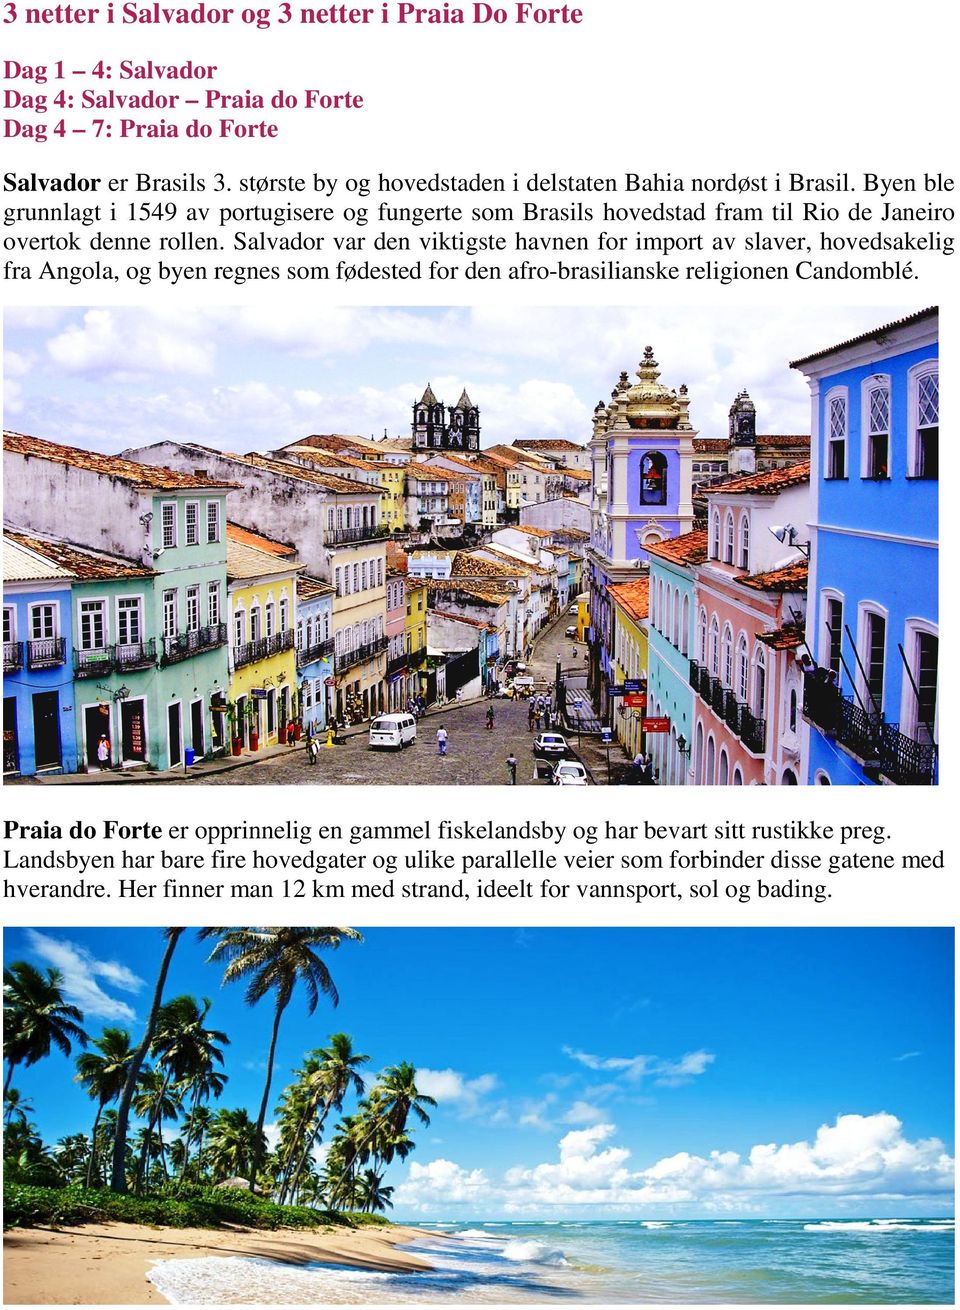 Salvador var den viktigste havnen for import av slaver, hovedsakelig fra Angola, og byen regnes som fødested for den afro-brasilianske religionen Candomblé.